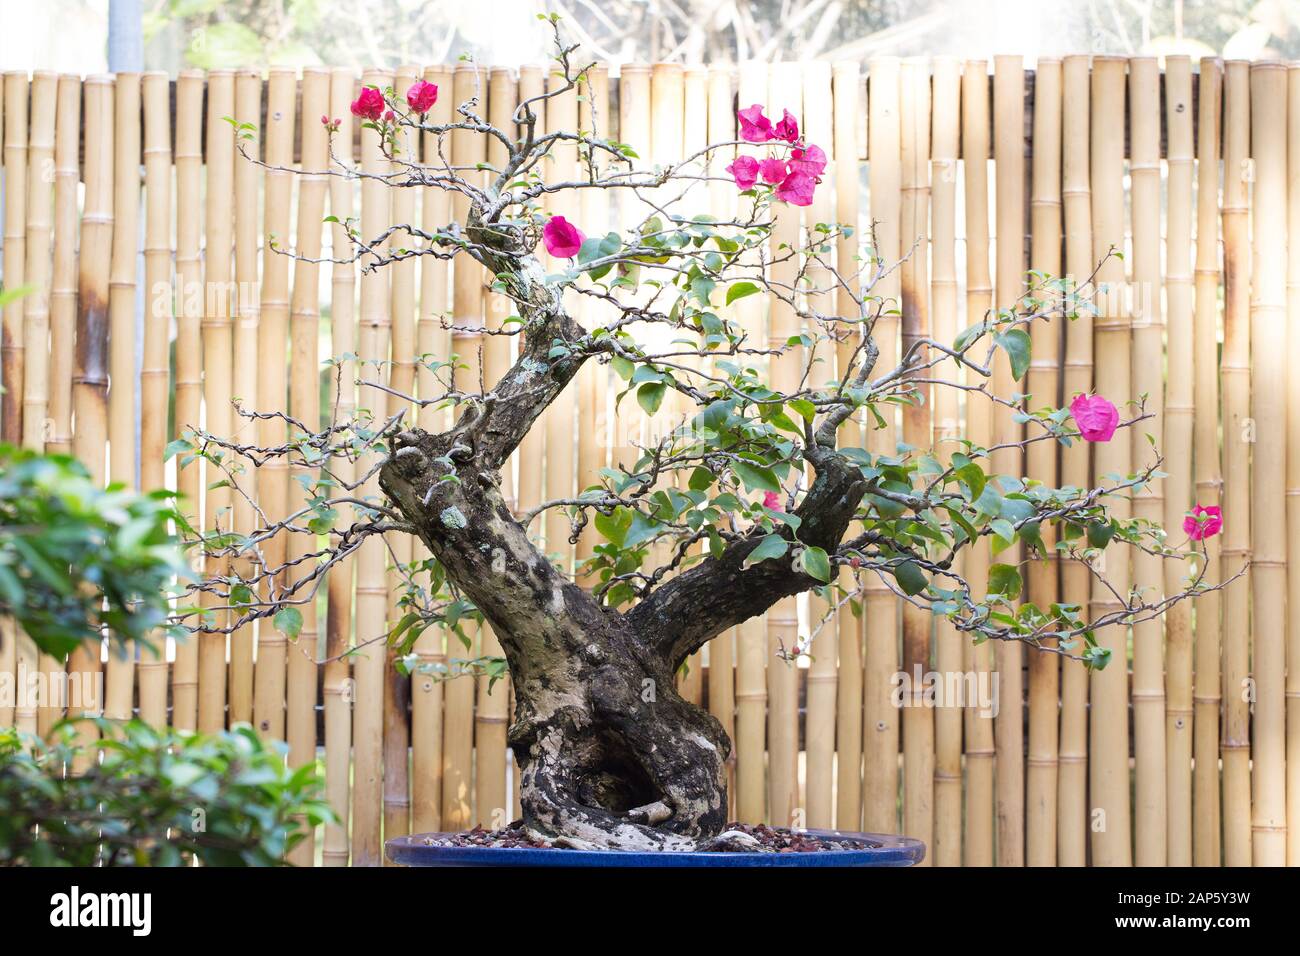 Bougainvillea glabra bonsai. Stock Photo